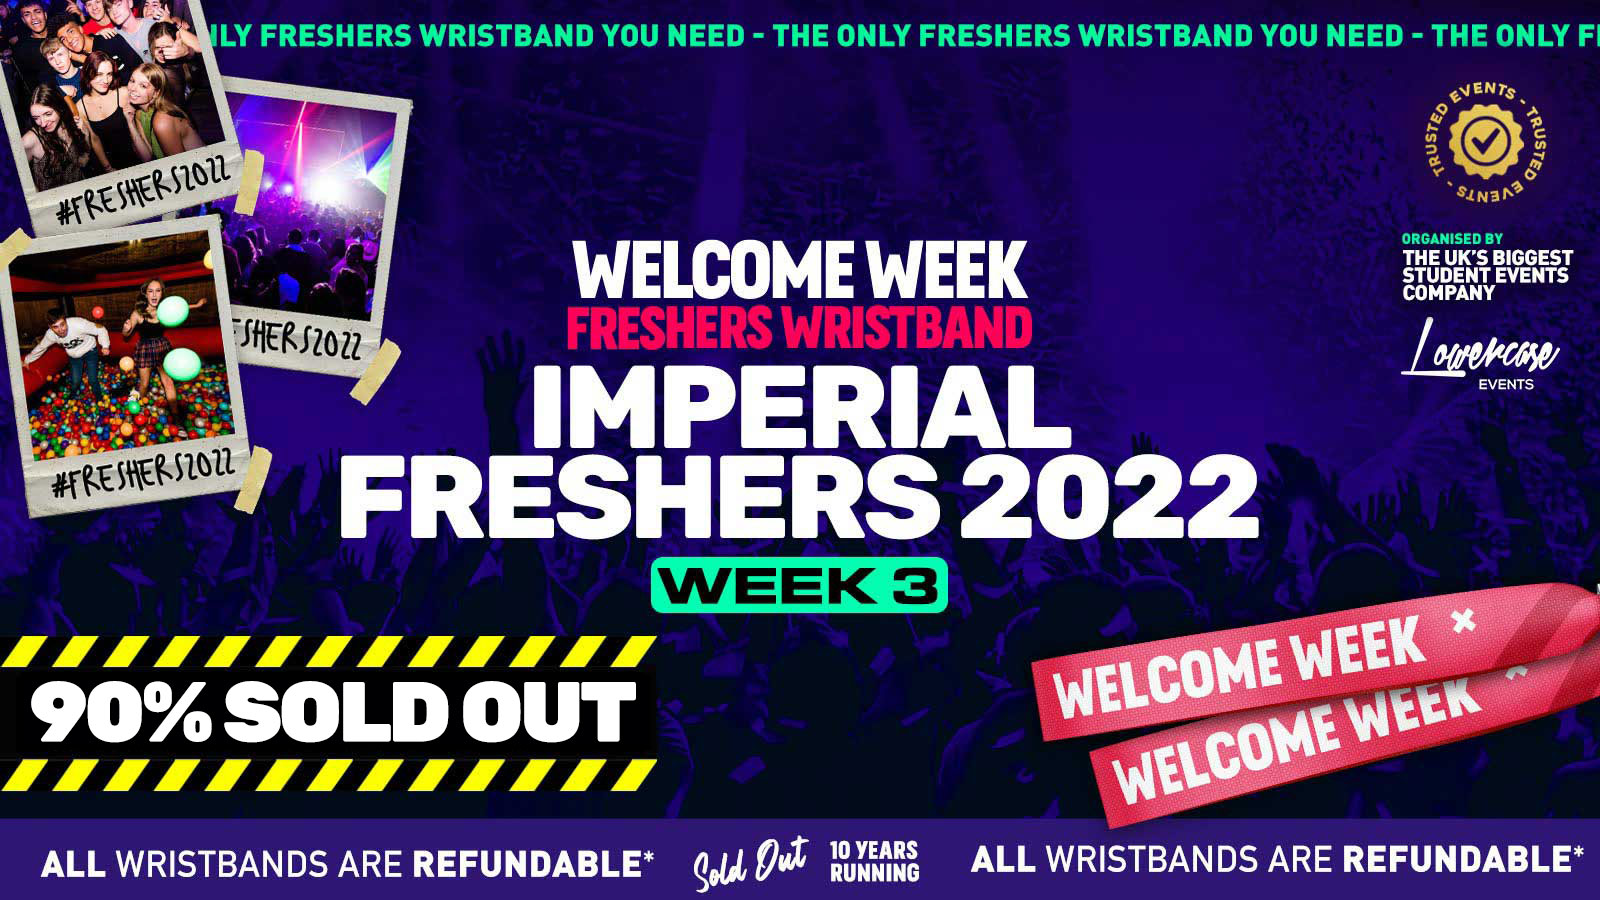 Imperial Freshers 2022 London Freshers Week 2022 Week